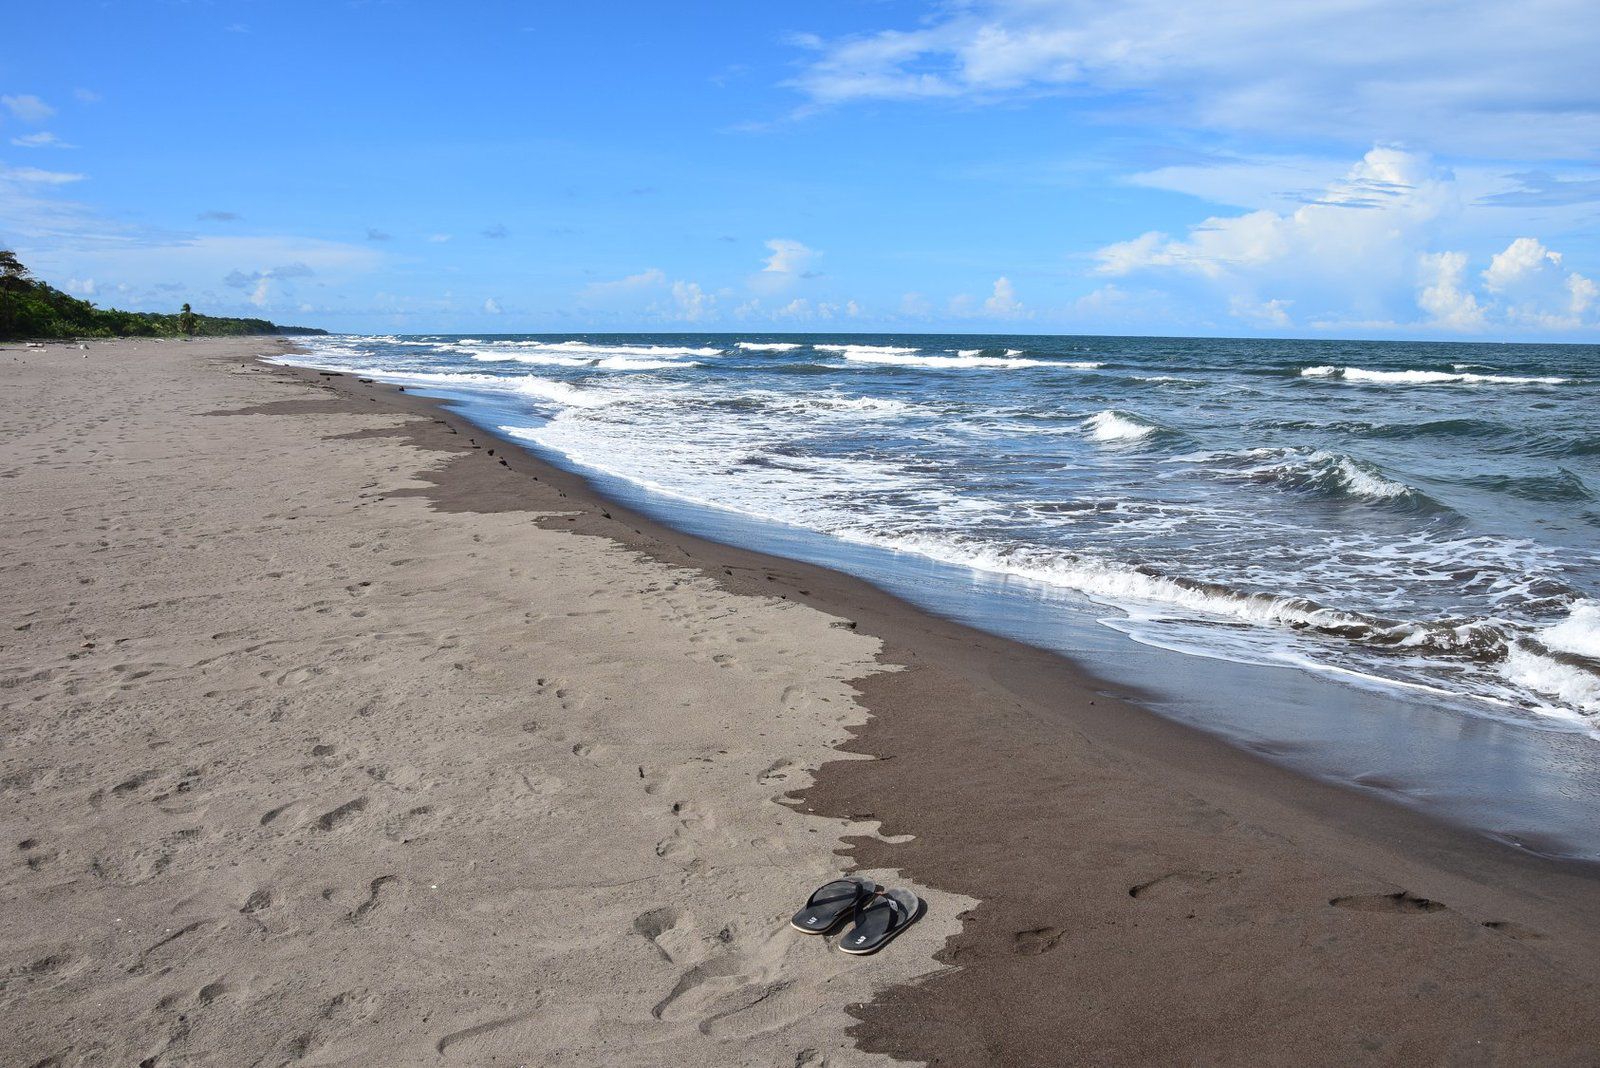 Le parc national de Tortuguero compte plus de 35 km de plages